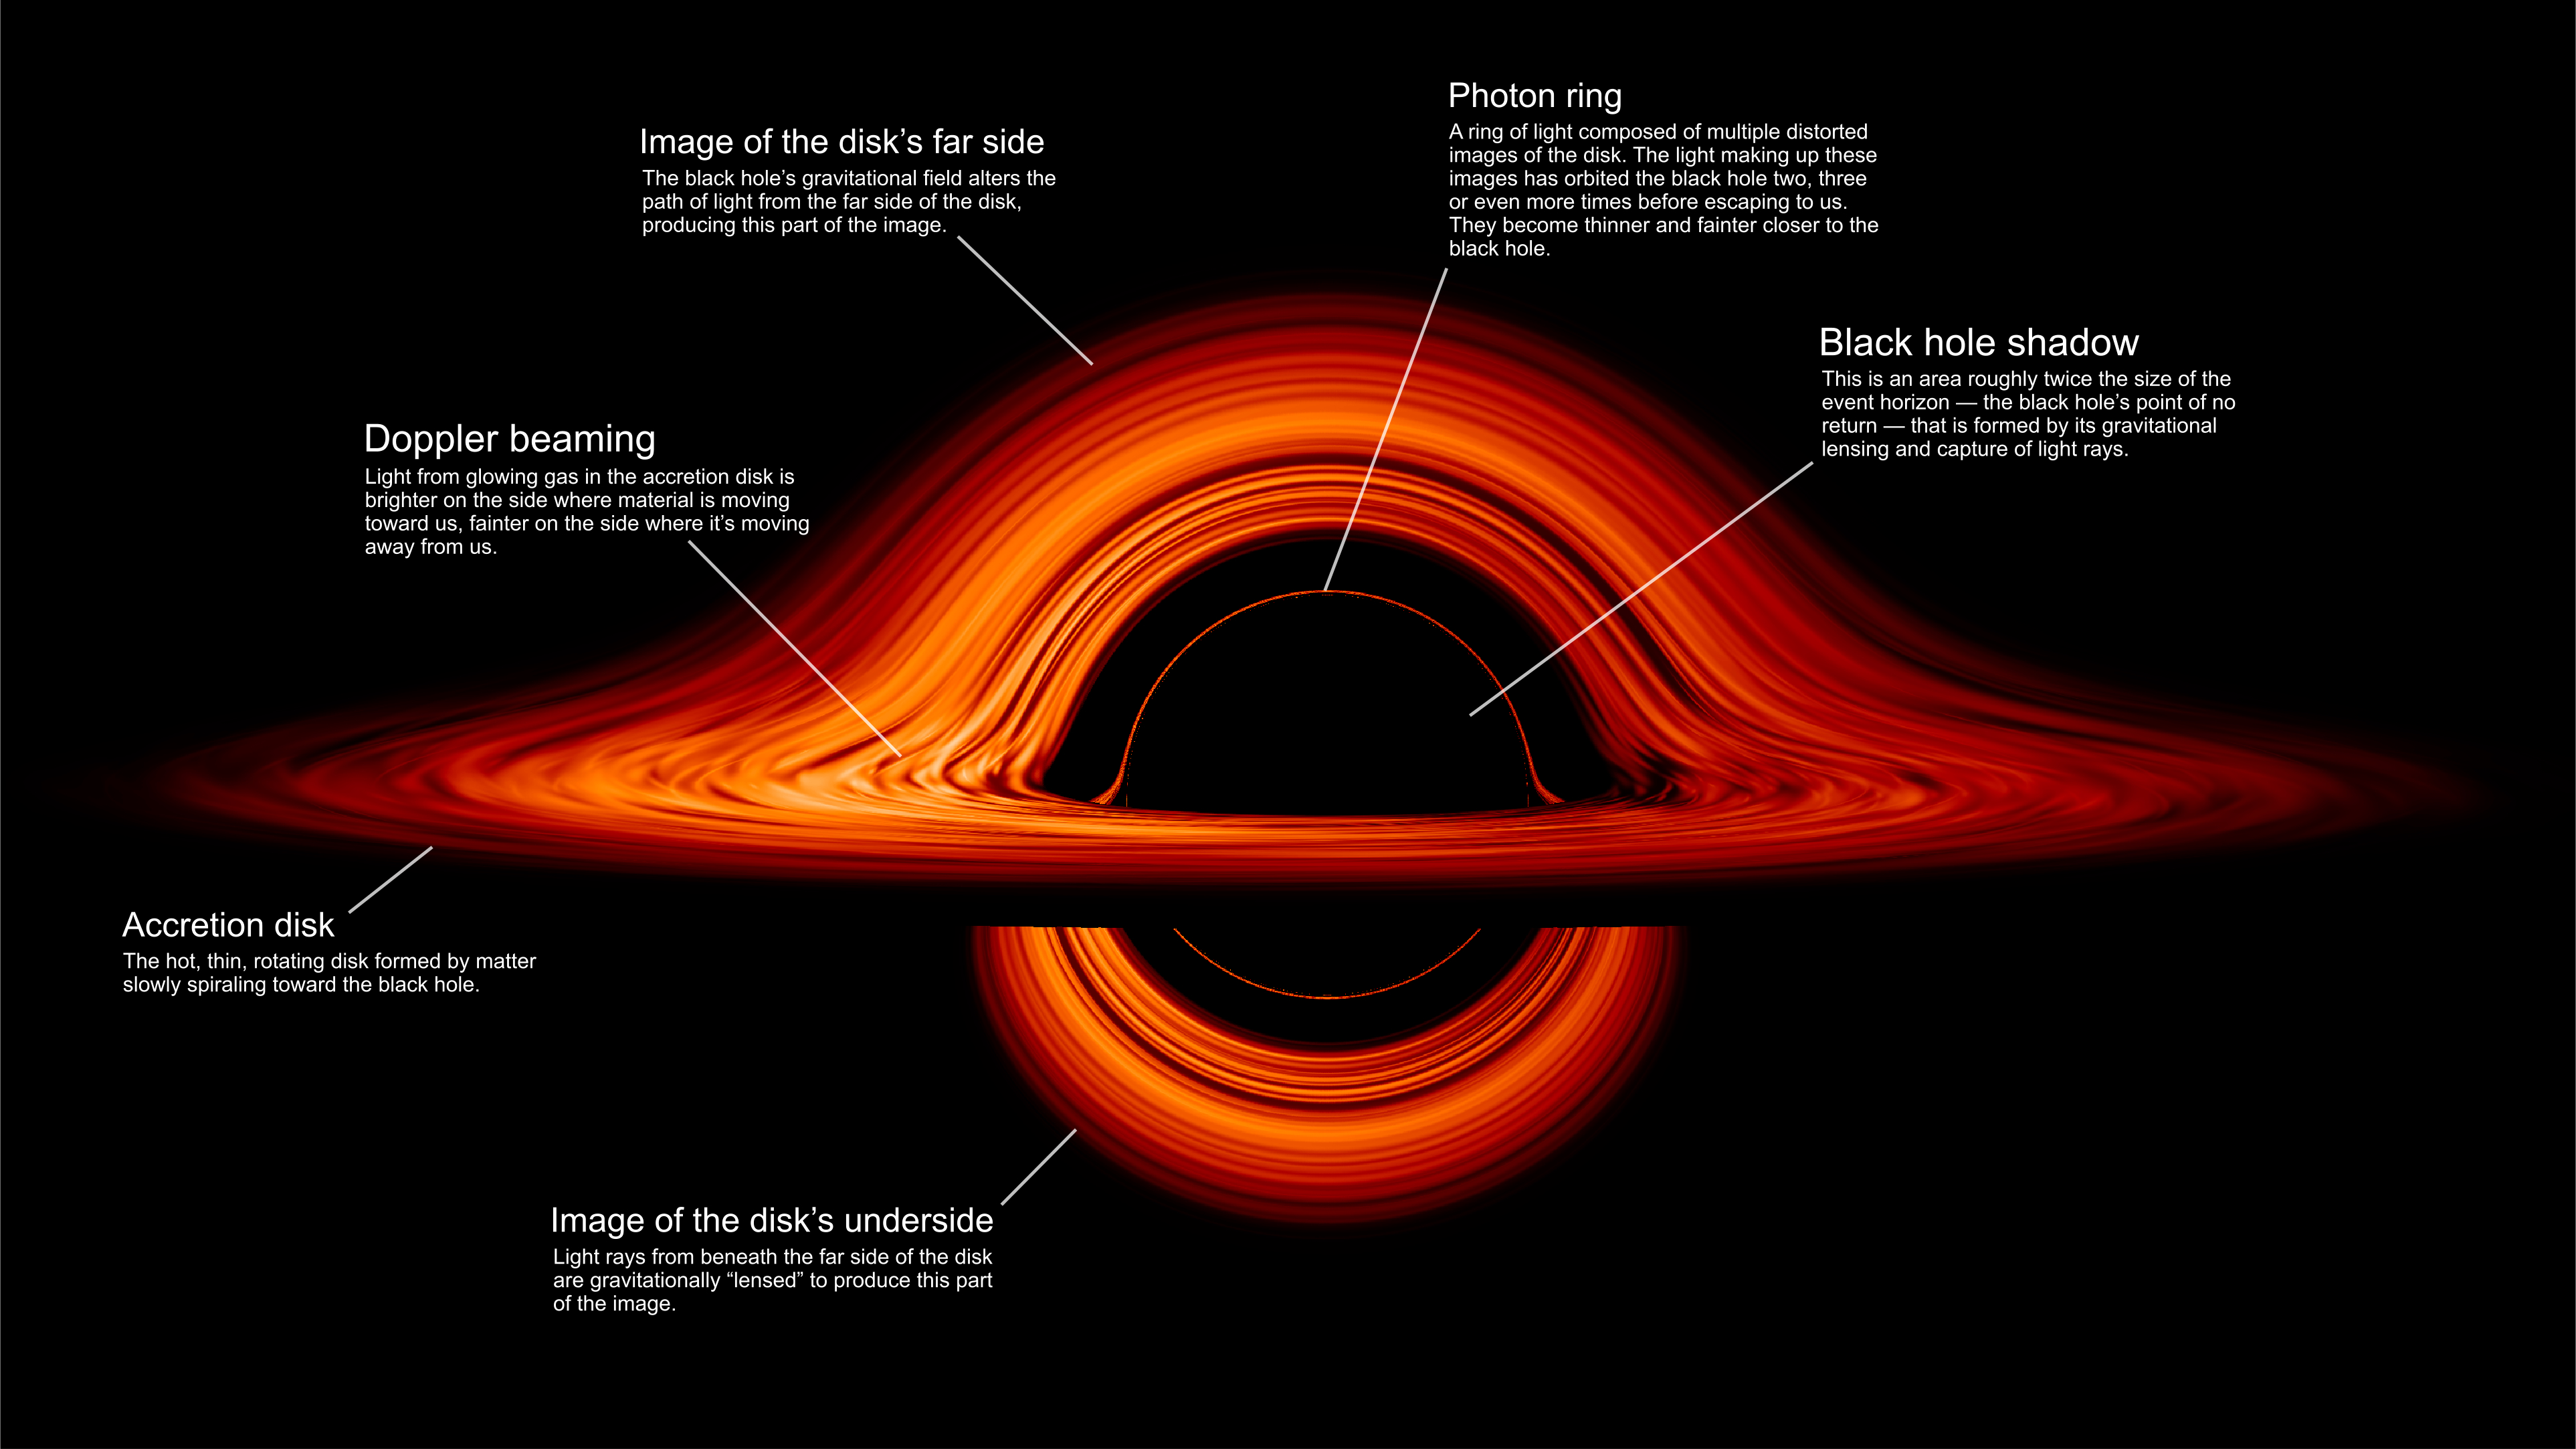 天文学黑洞及周围吸积盘的计算机渲染图(source: nasa)